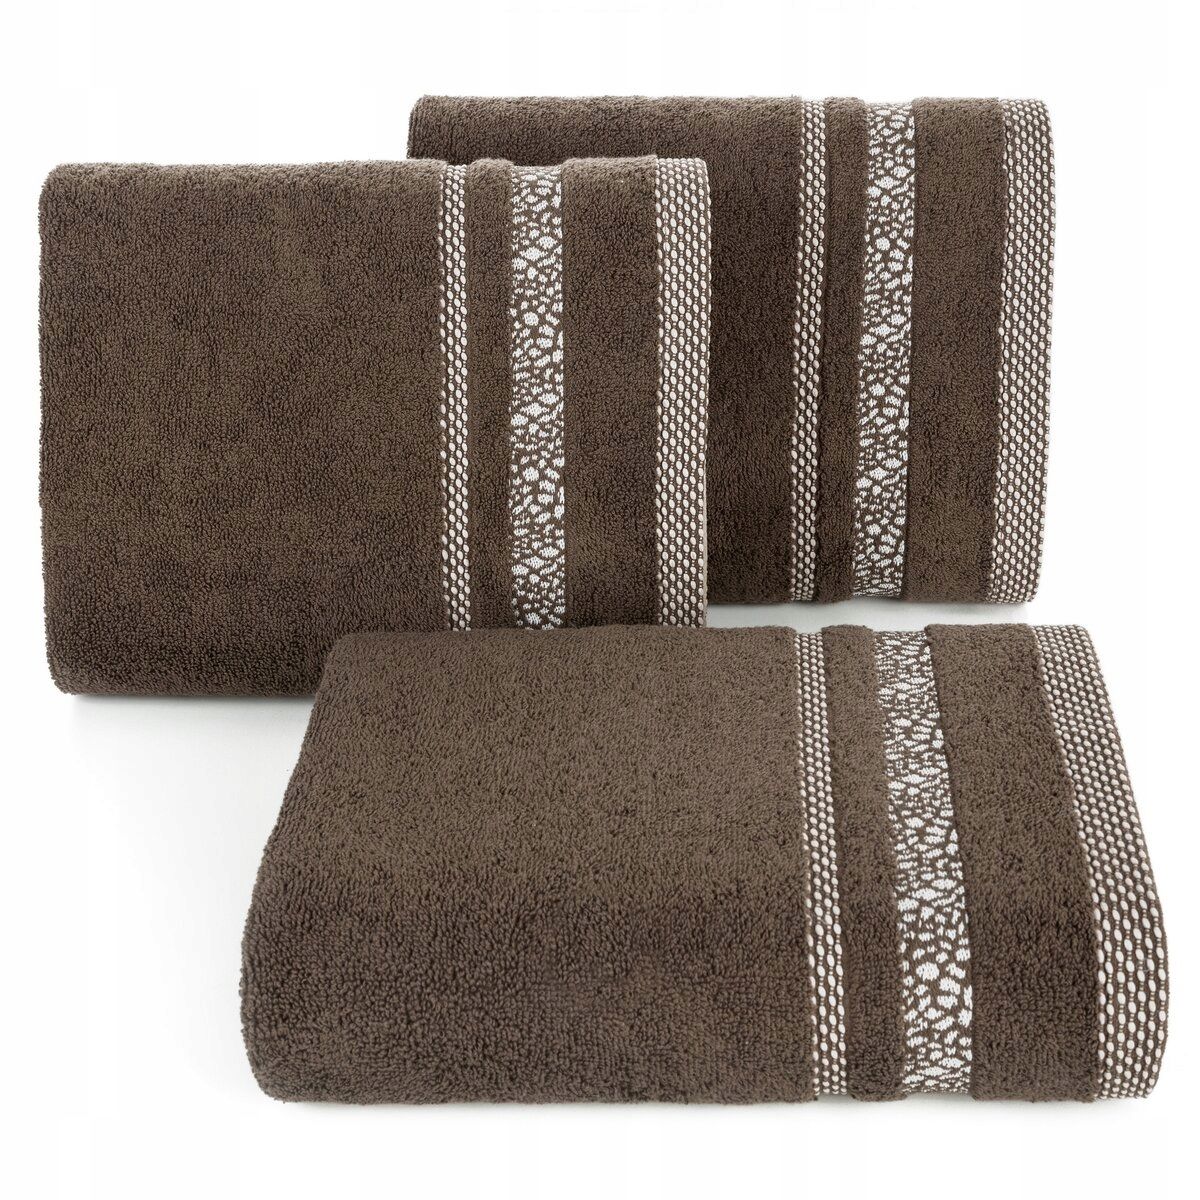 Ręcznik Tessa 30x50 brązowy frotte 500g/m2